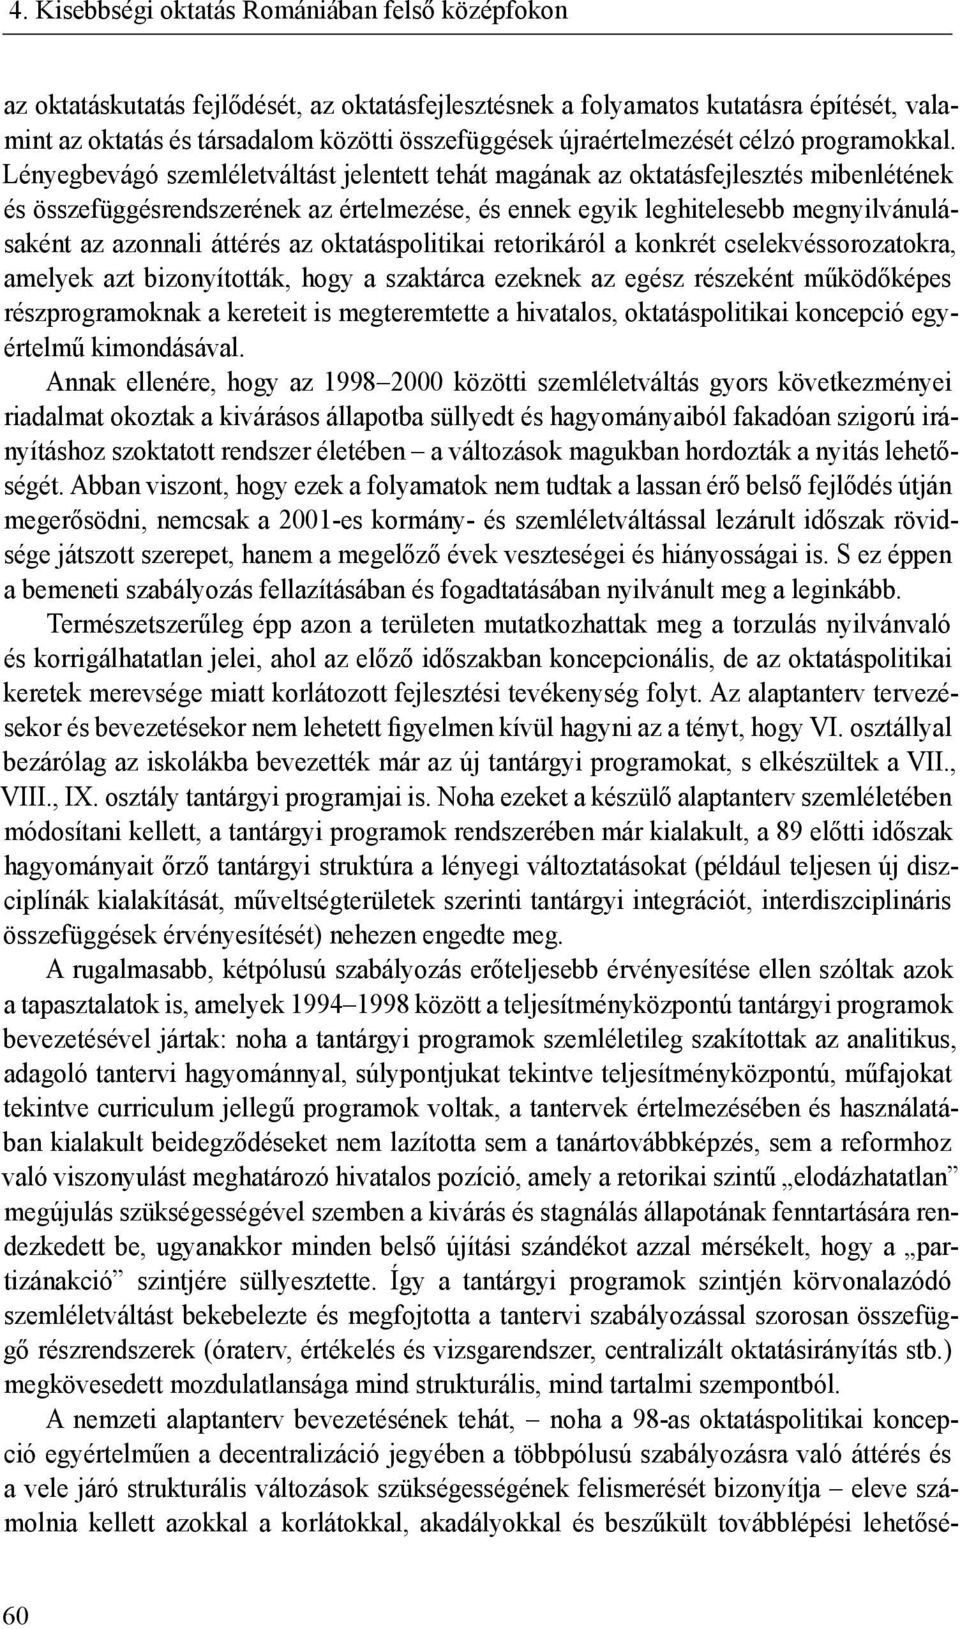 4. Kisebbségi oktatás Romániában felső középfokon 68 - PDF Ingyenes letöltés